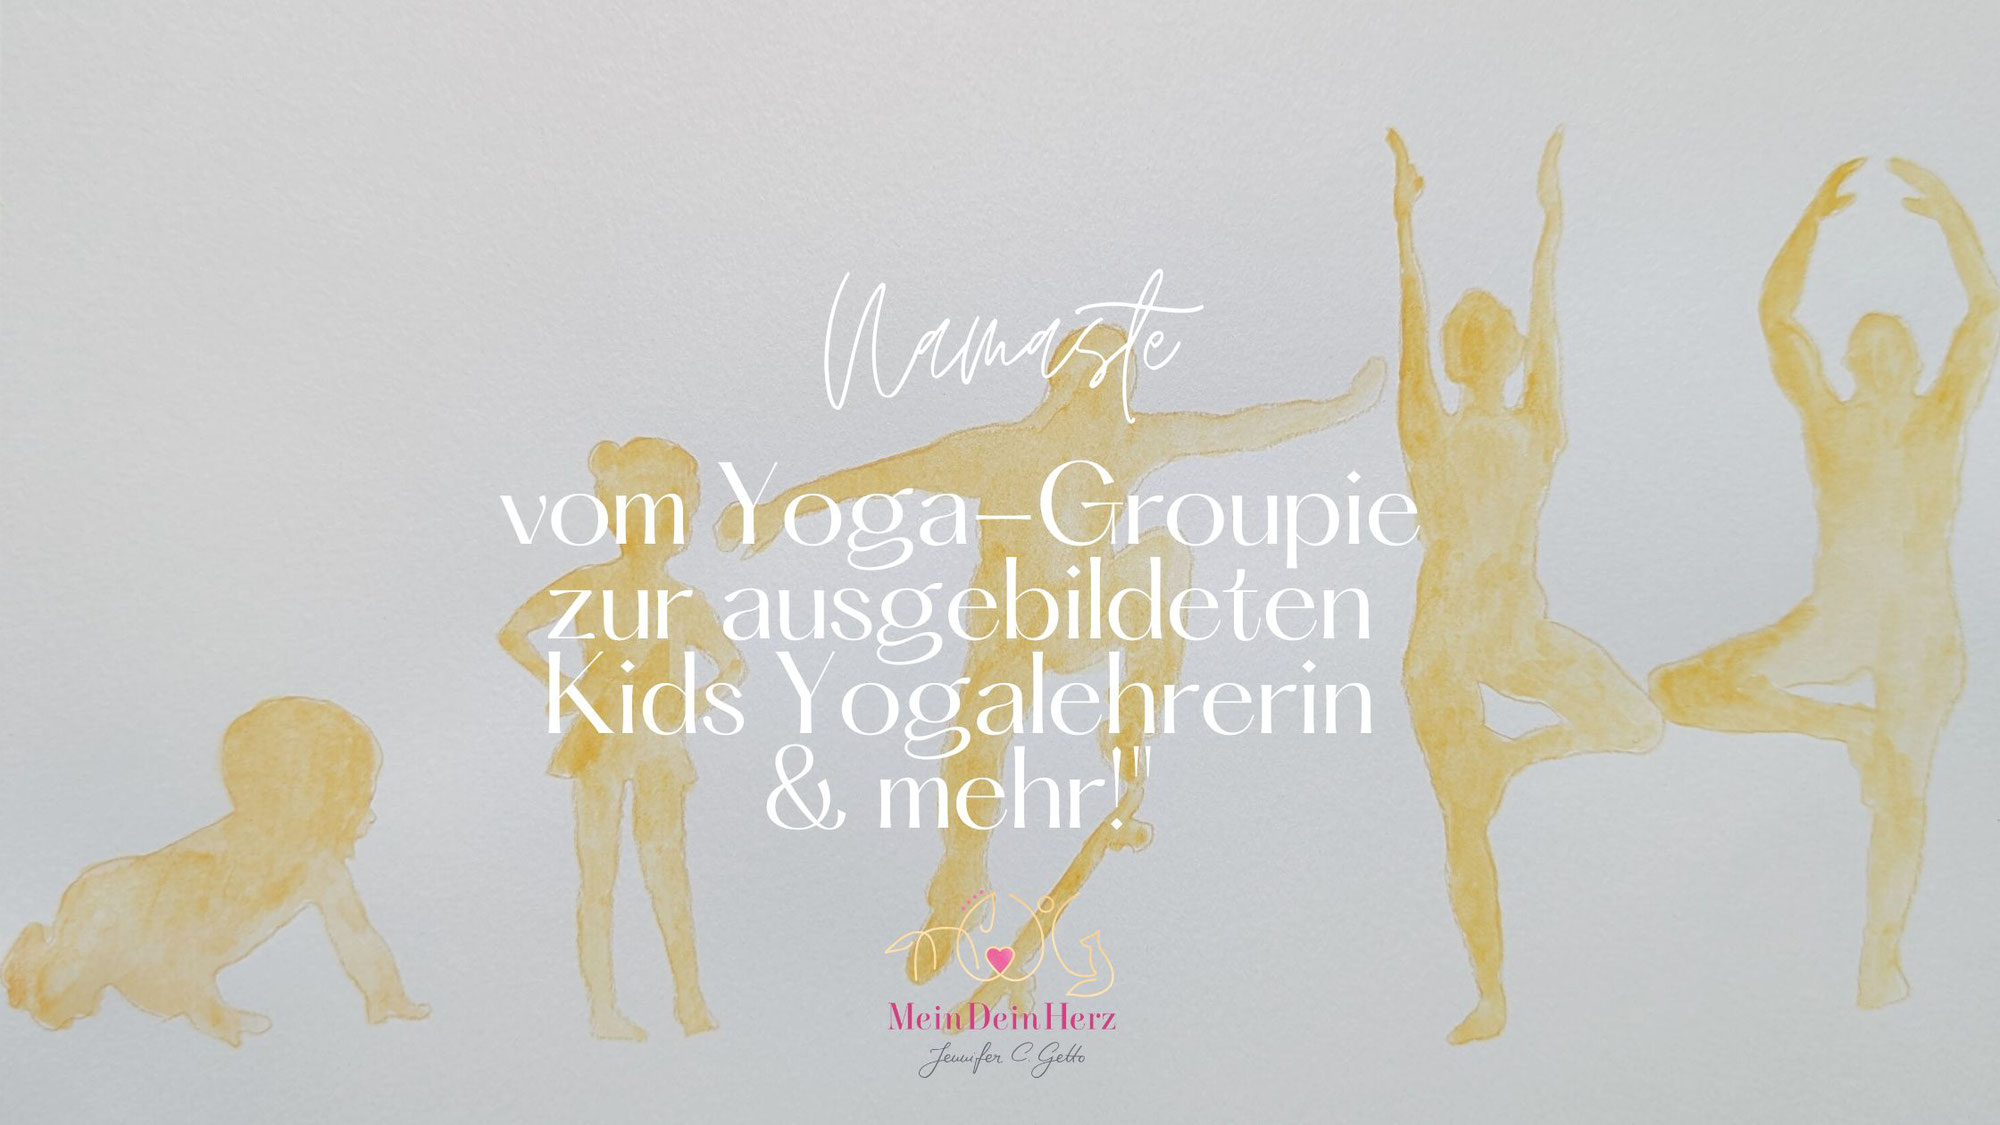 Namaste vom Yoga-Groupie zur ausgebildeten Kids Yogalehrerin & mehr!